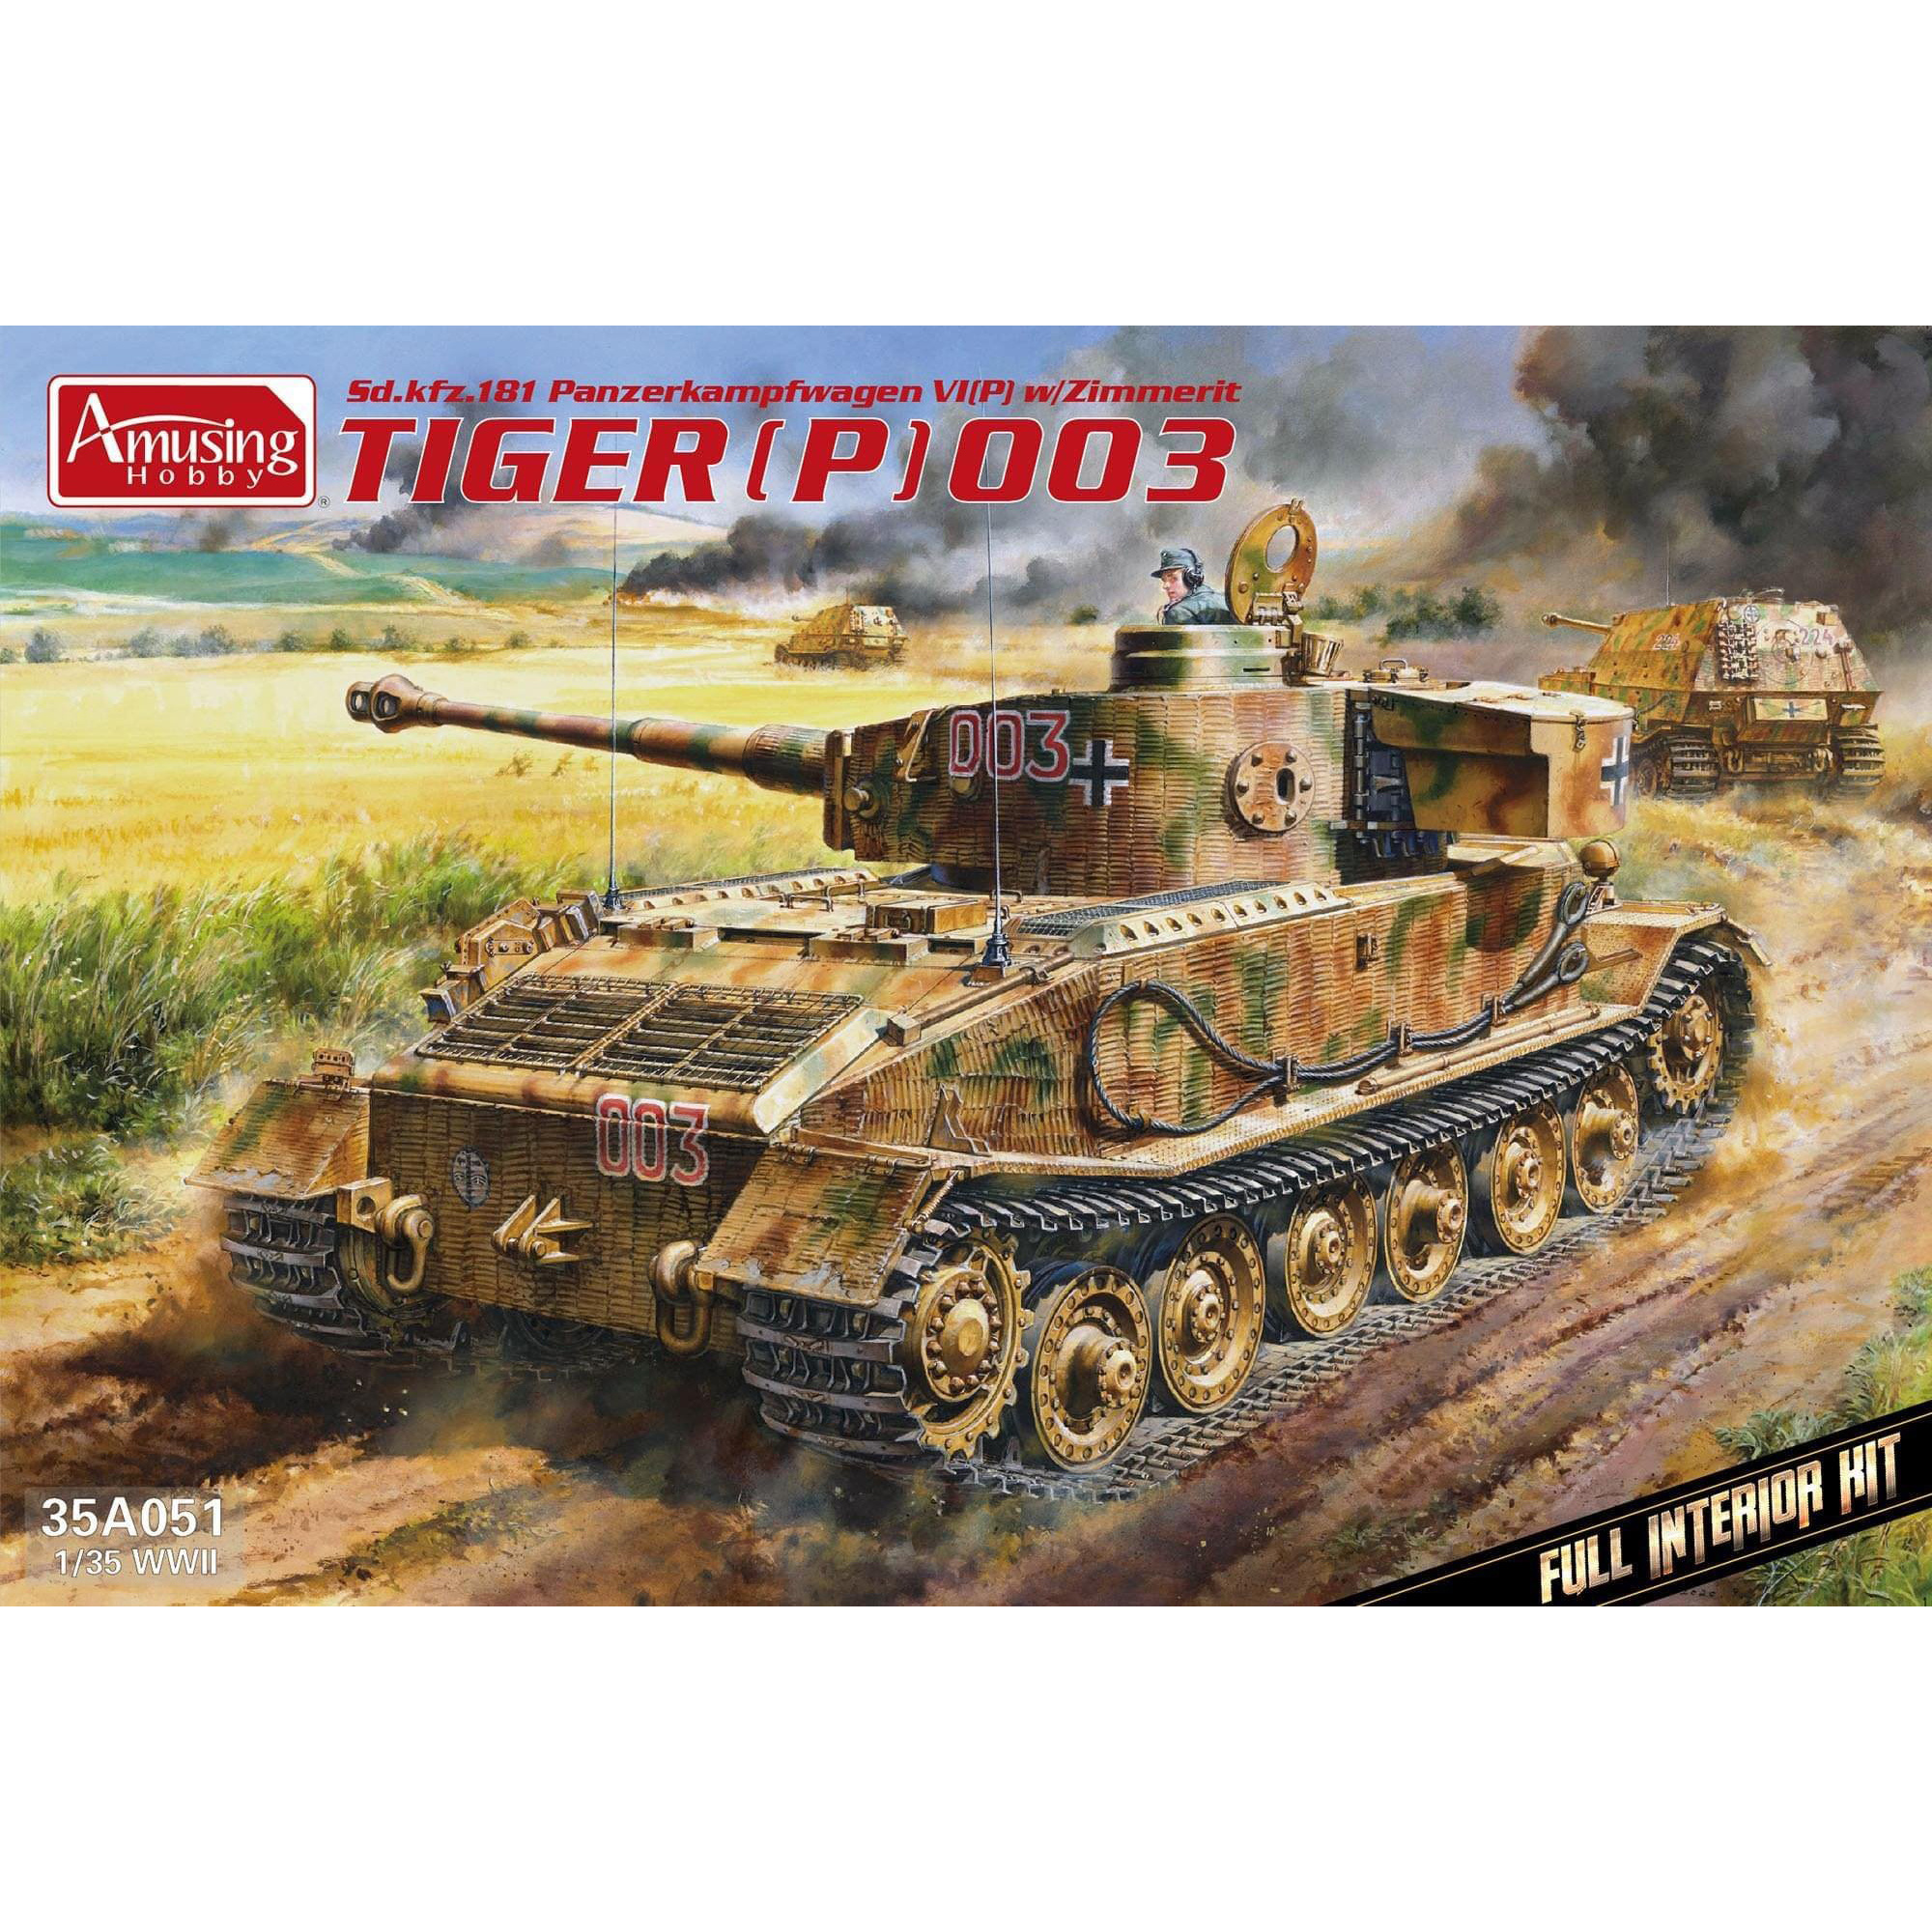 35A051 Amusing Hobby 1/35 Tiger P Tank (003)